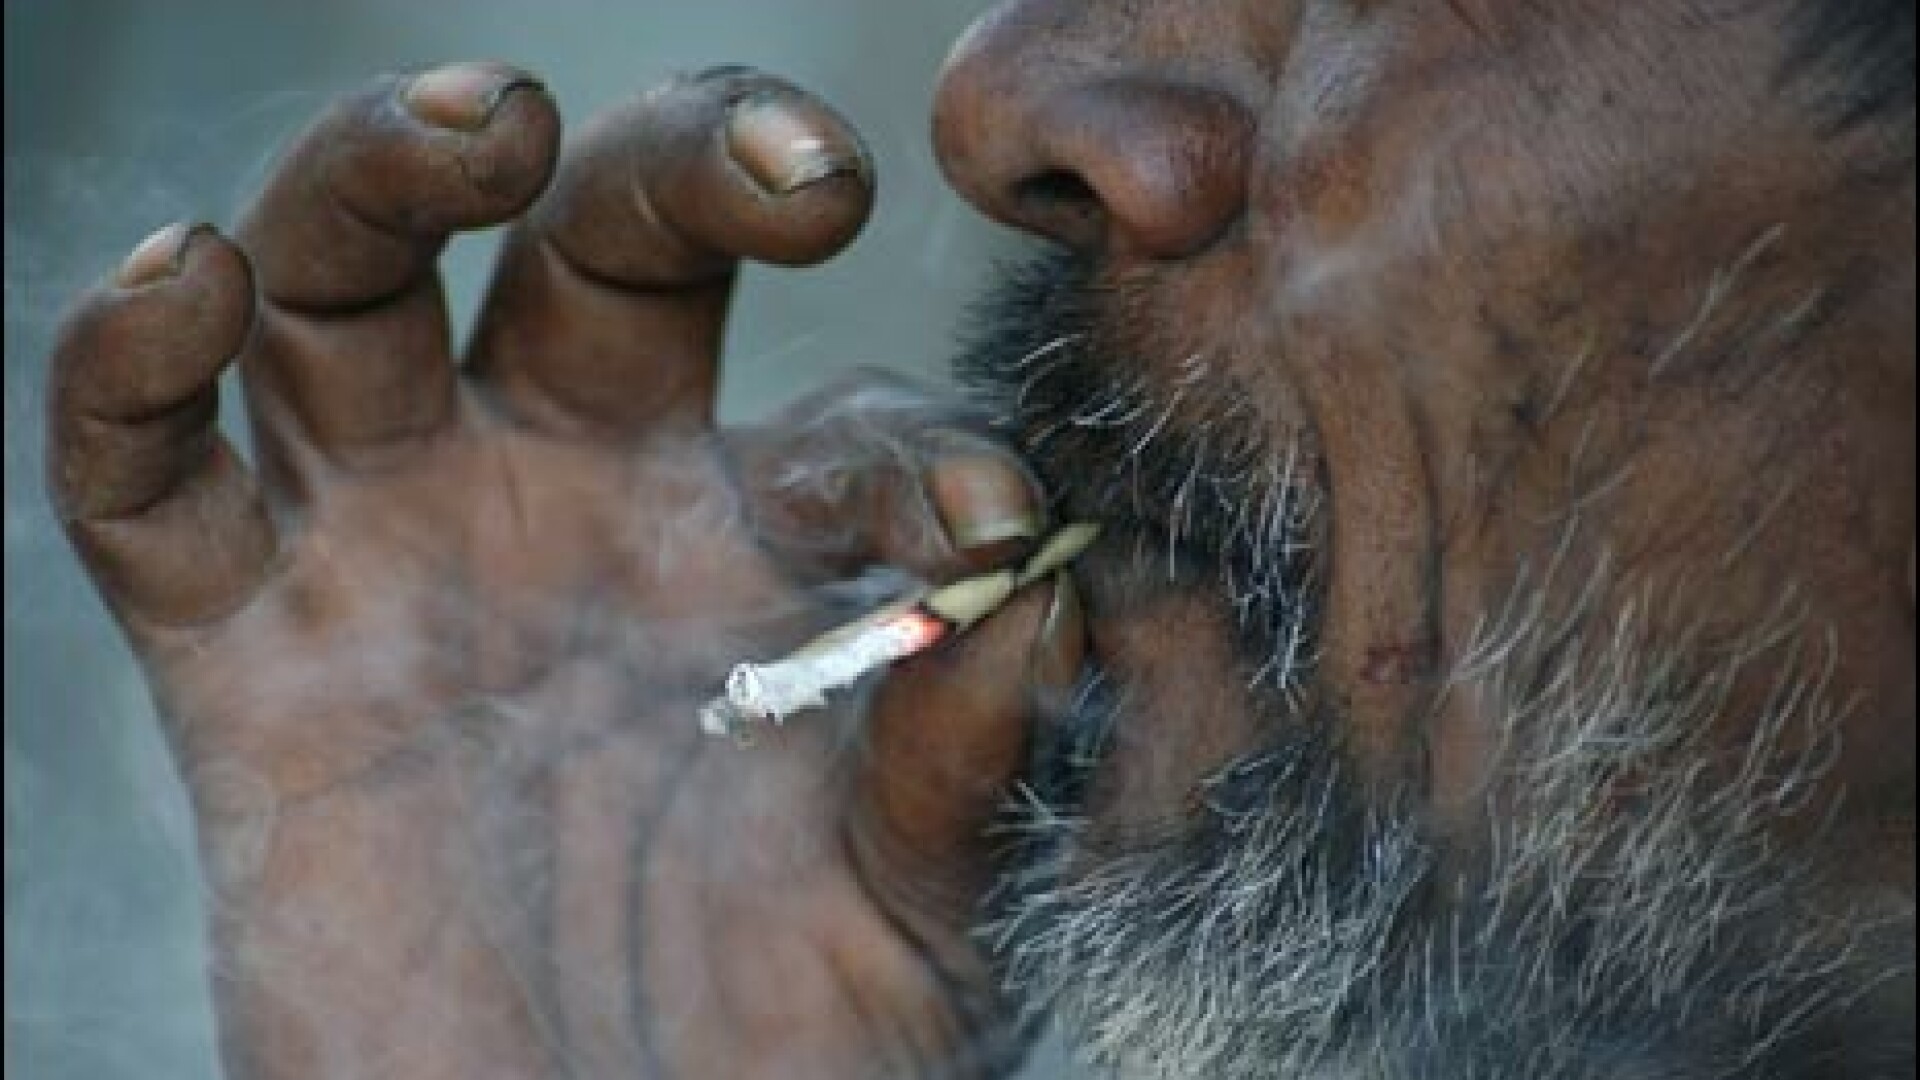 India a interzis fumatul in locurile publice